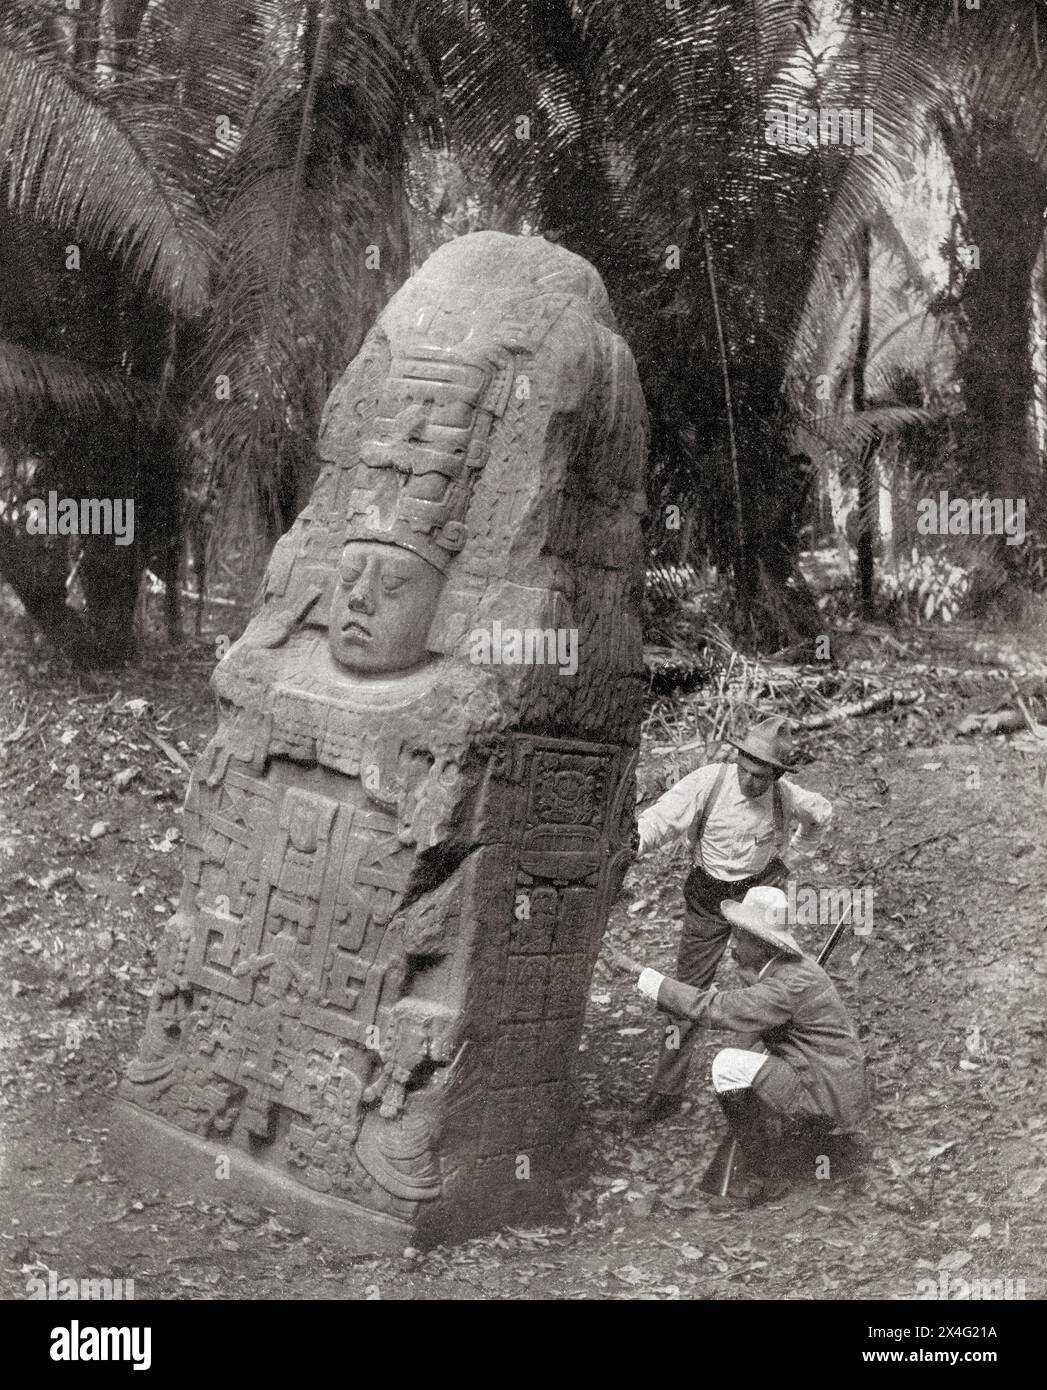 Quiriguá, Izabal, sud-est du Guatemala. Site classé au patrimoine mondial de l'UNESCO. señor Matheu et Señor Valdeavellano examinant un des monuments récemment découverts. De Mundo Grafico, publié en 1912. Banque D'Images